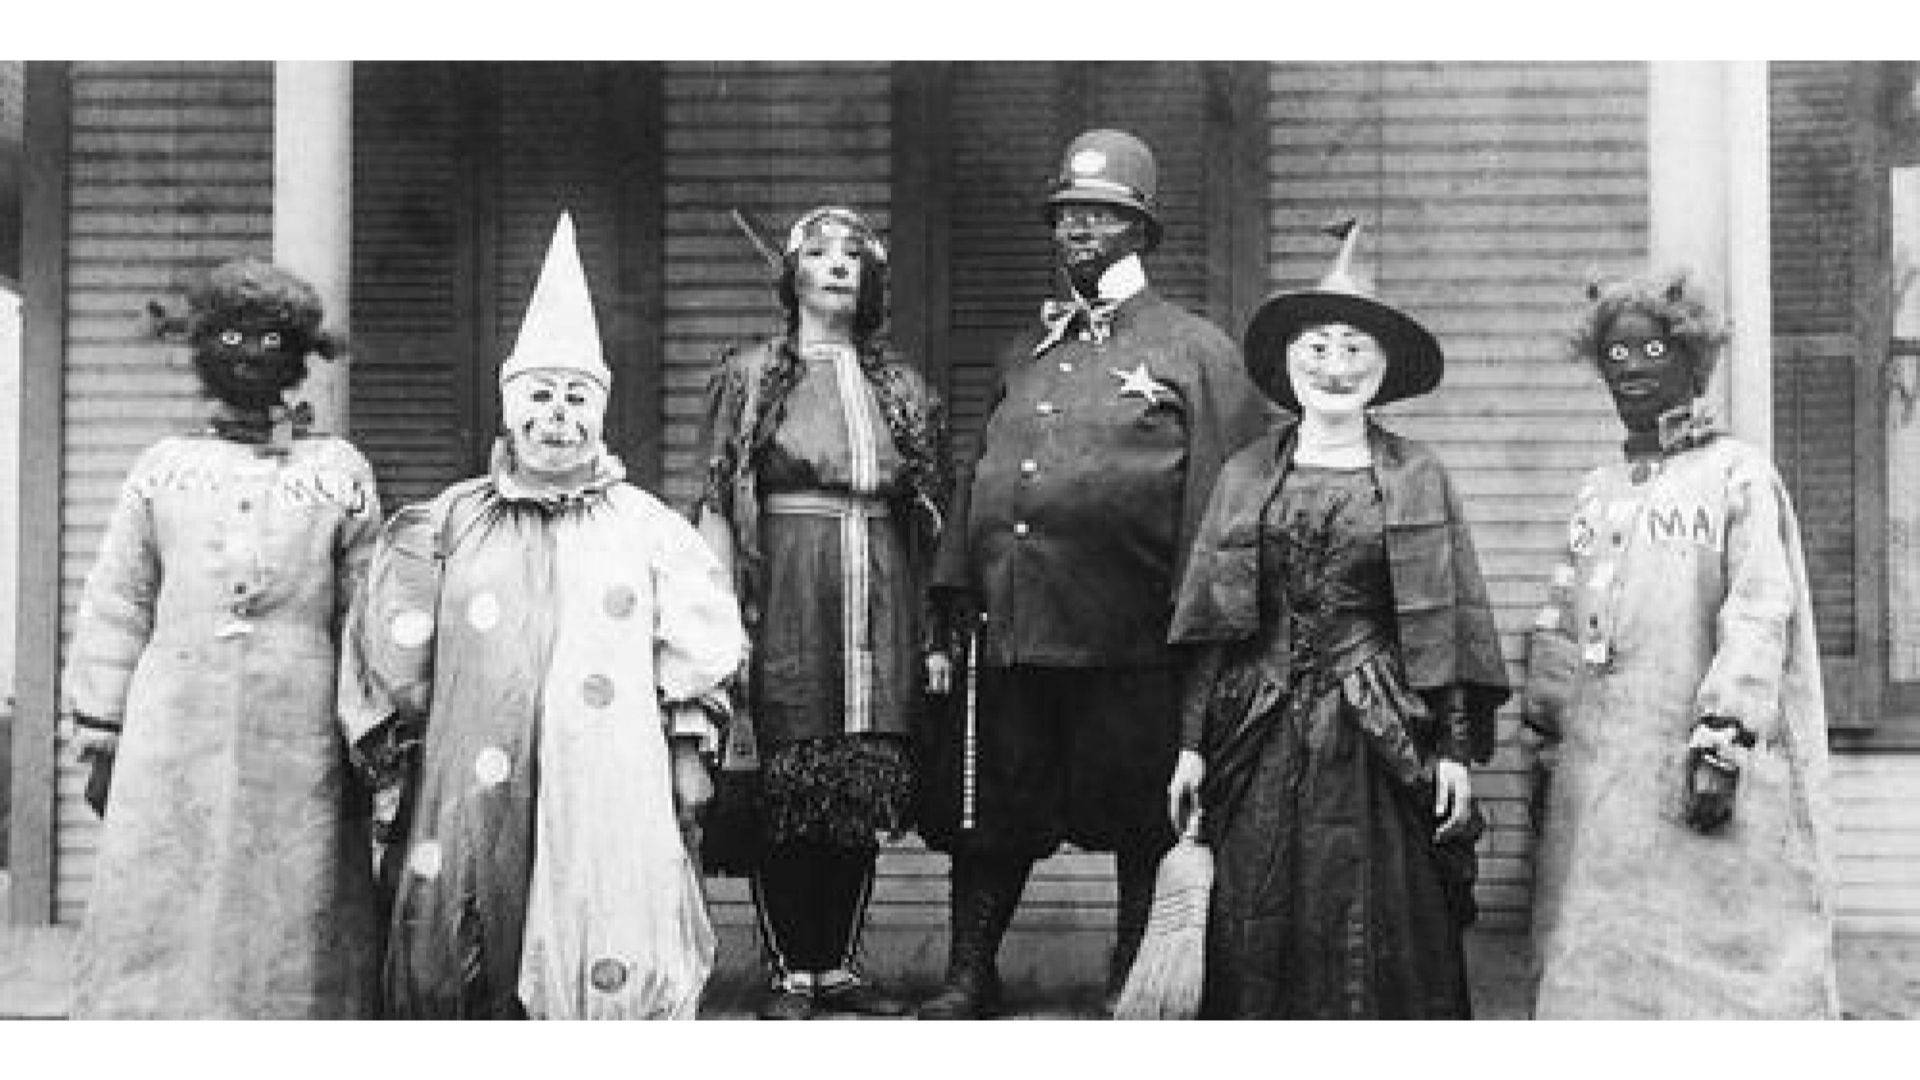 Vintage Halloween Costumes Wallpaper